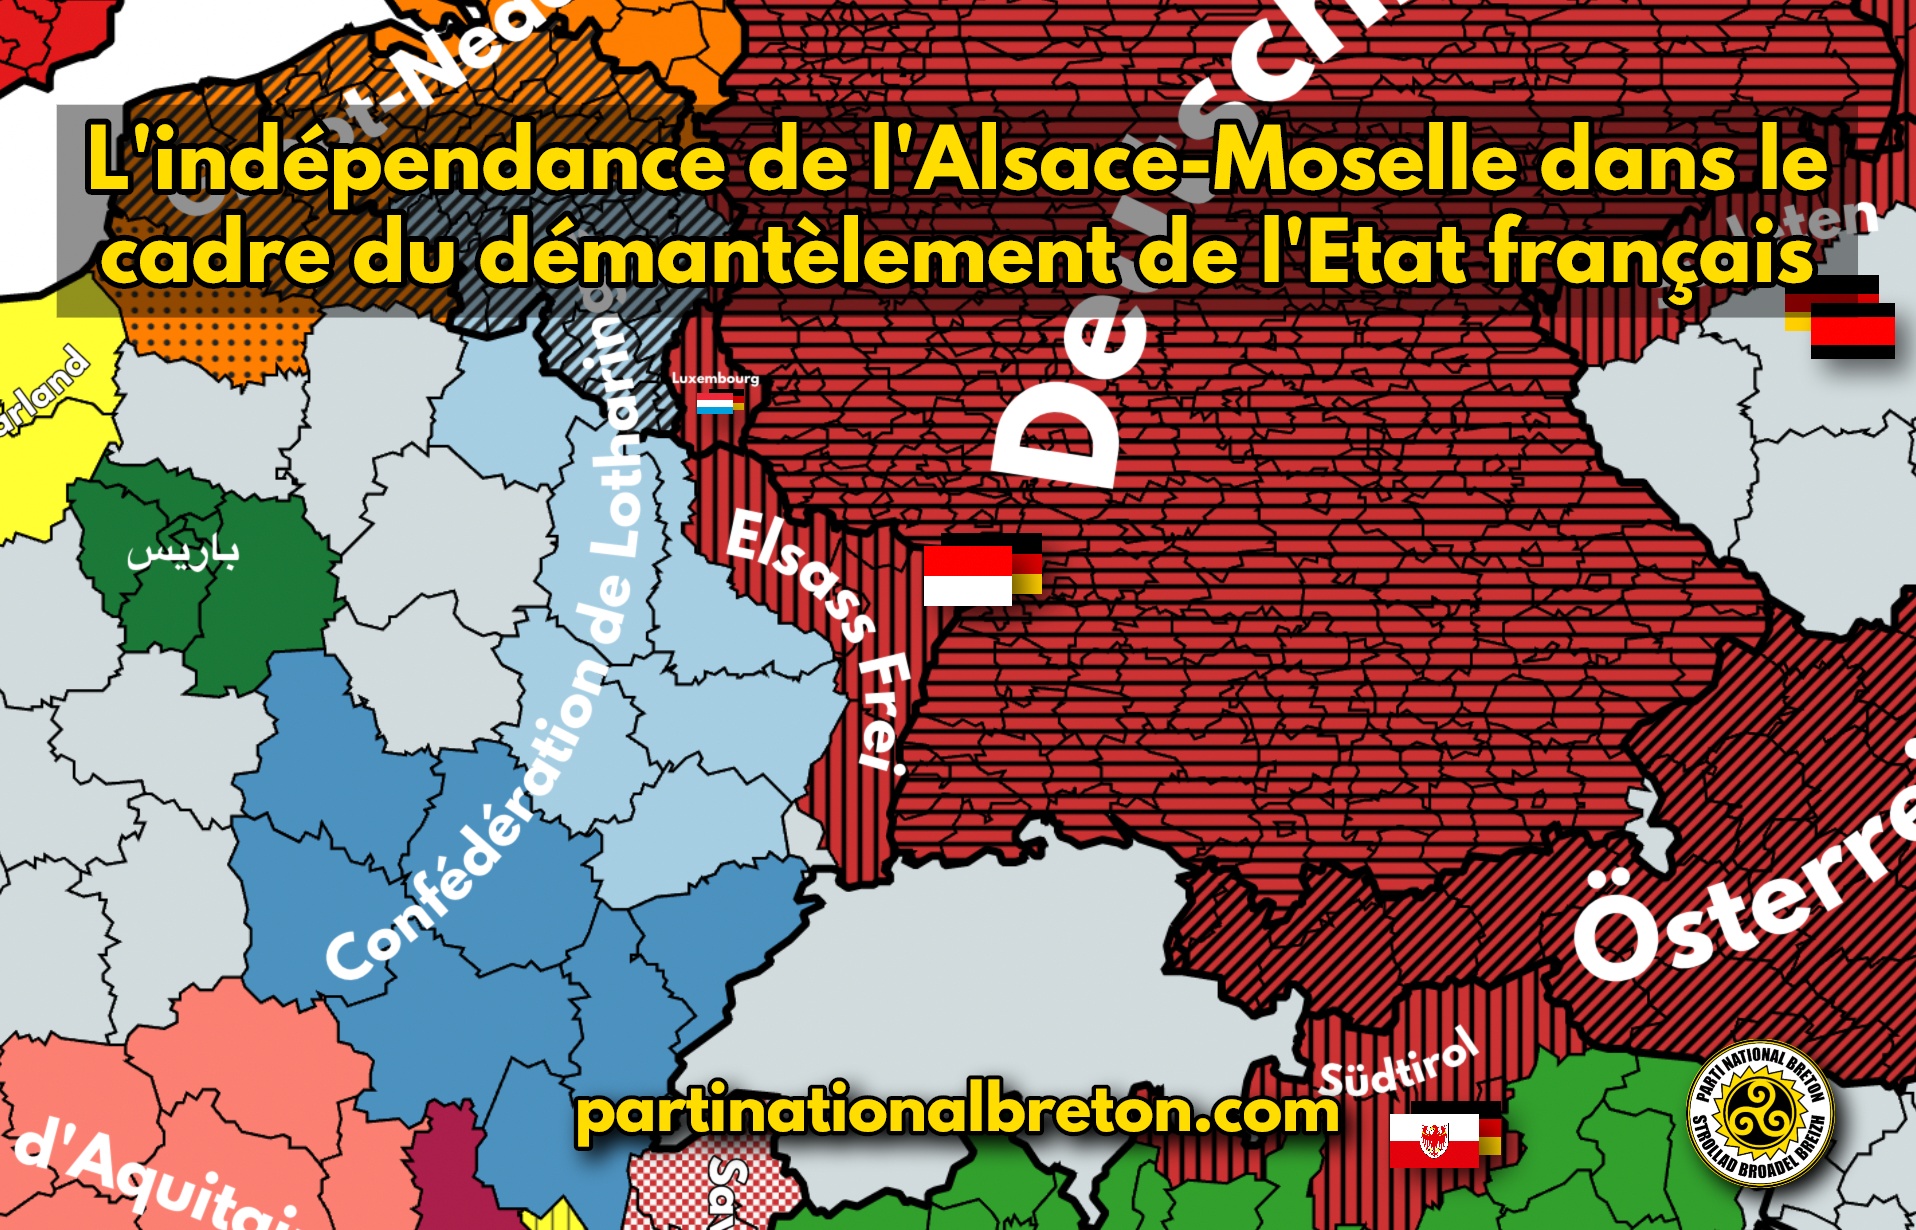 L’indépendance de l’Alsace-Moselle dans le cadre du démantèlement de l’Etat français